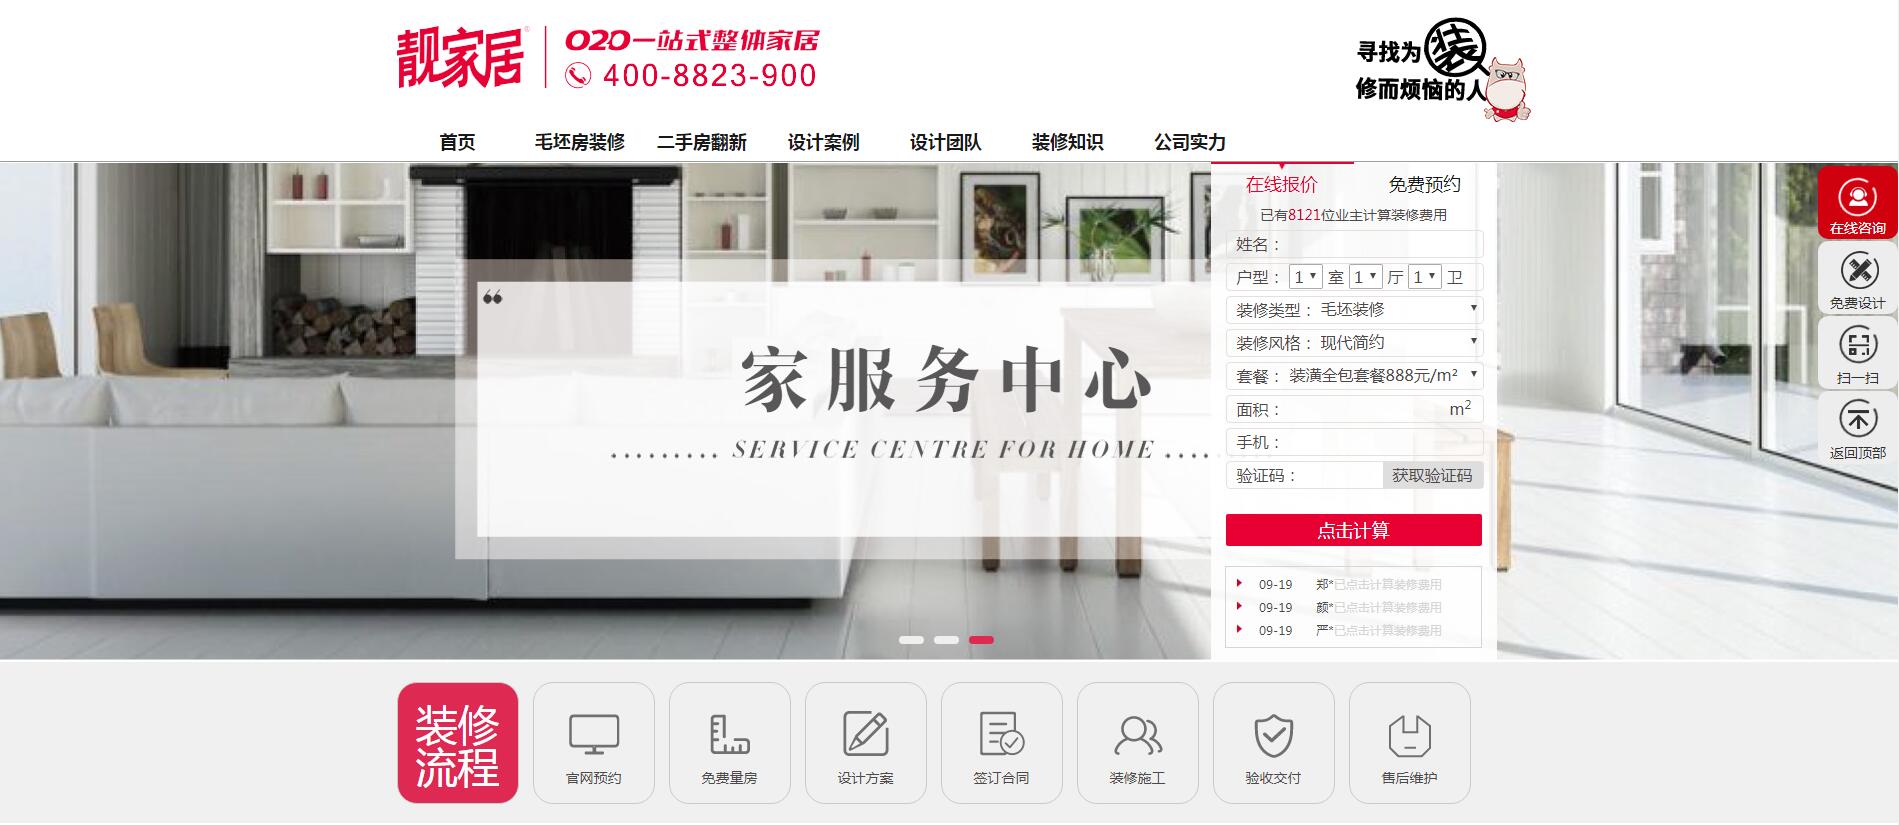 靓加居家装行业网站——广州企业网建设公司